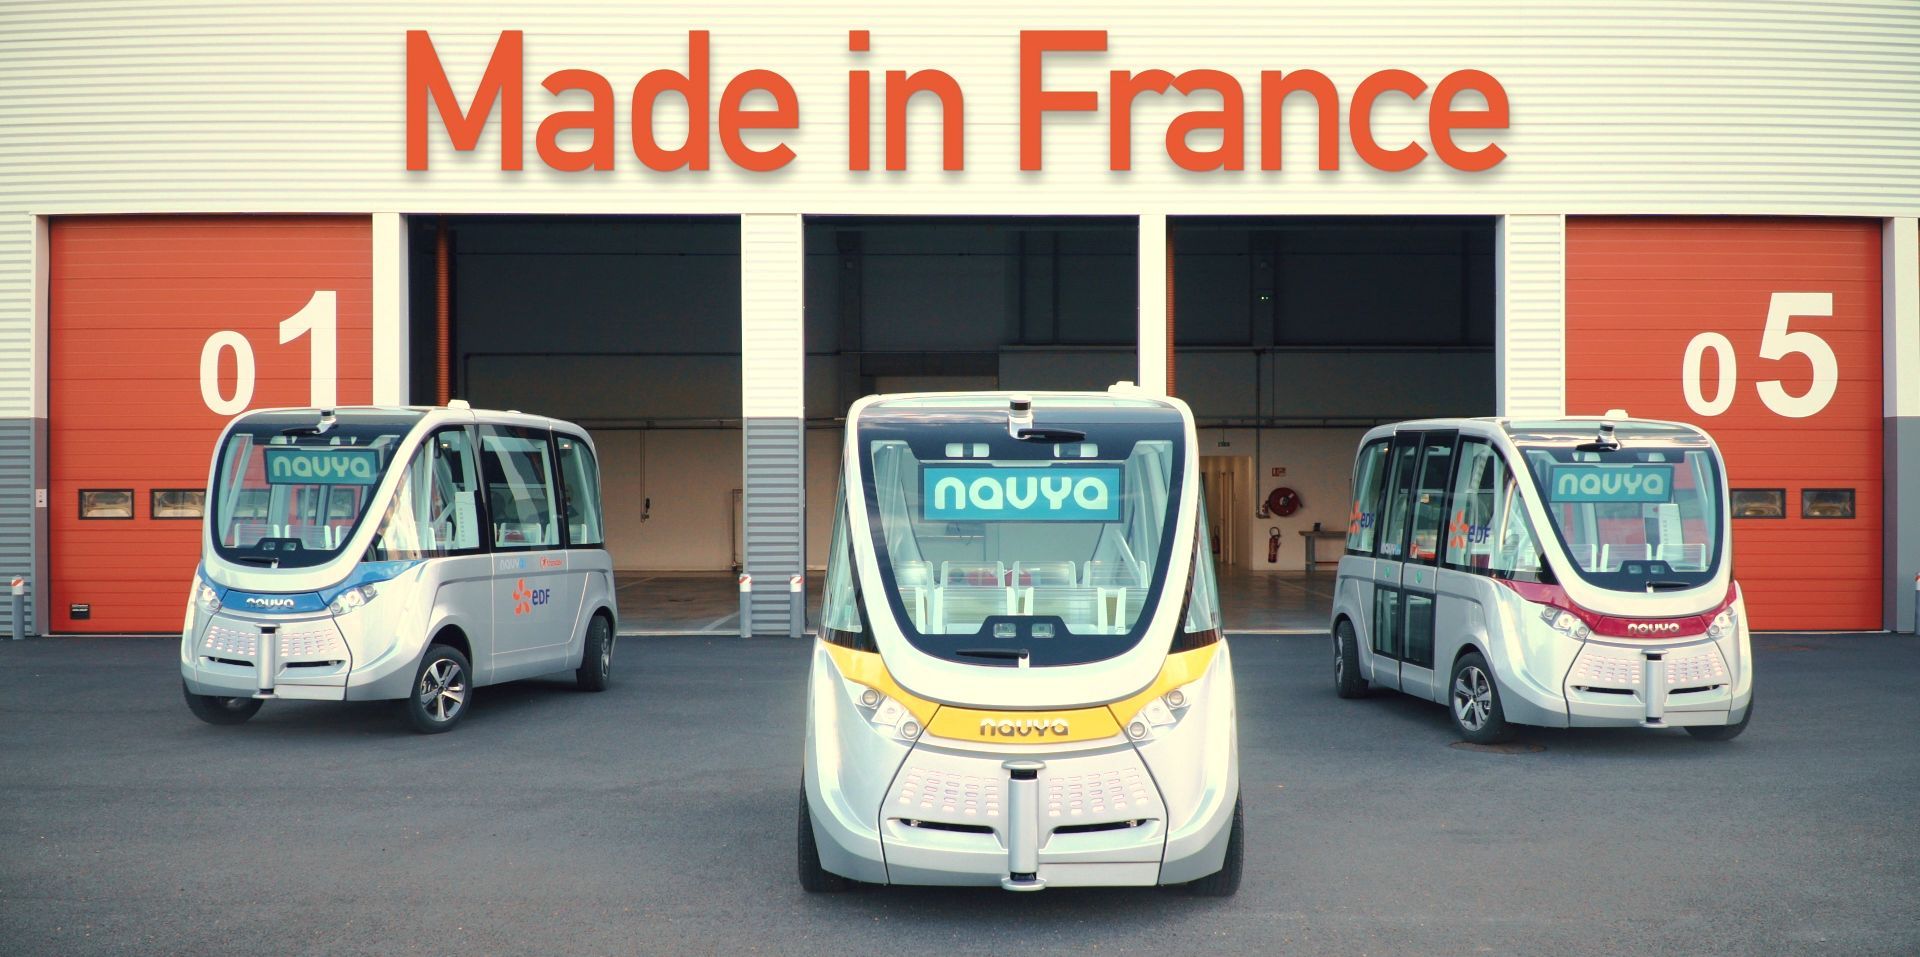 EDF grille la priorité à Google avec 6 navettes autonomes déjà en circulation en France